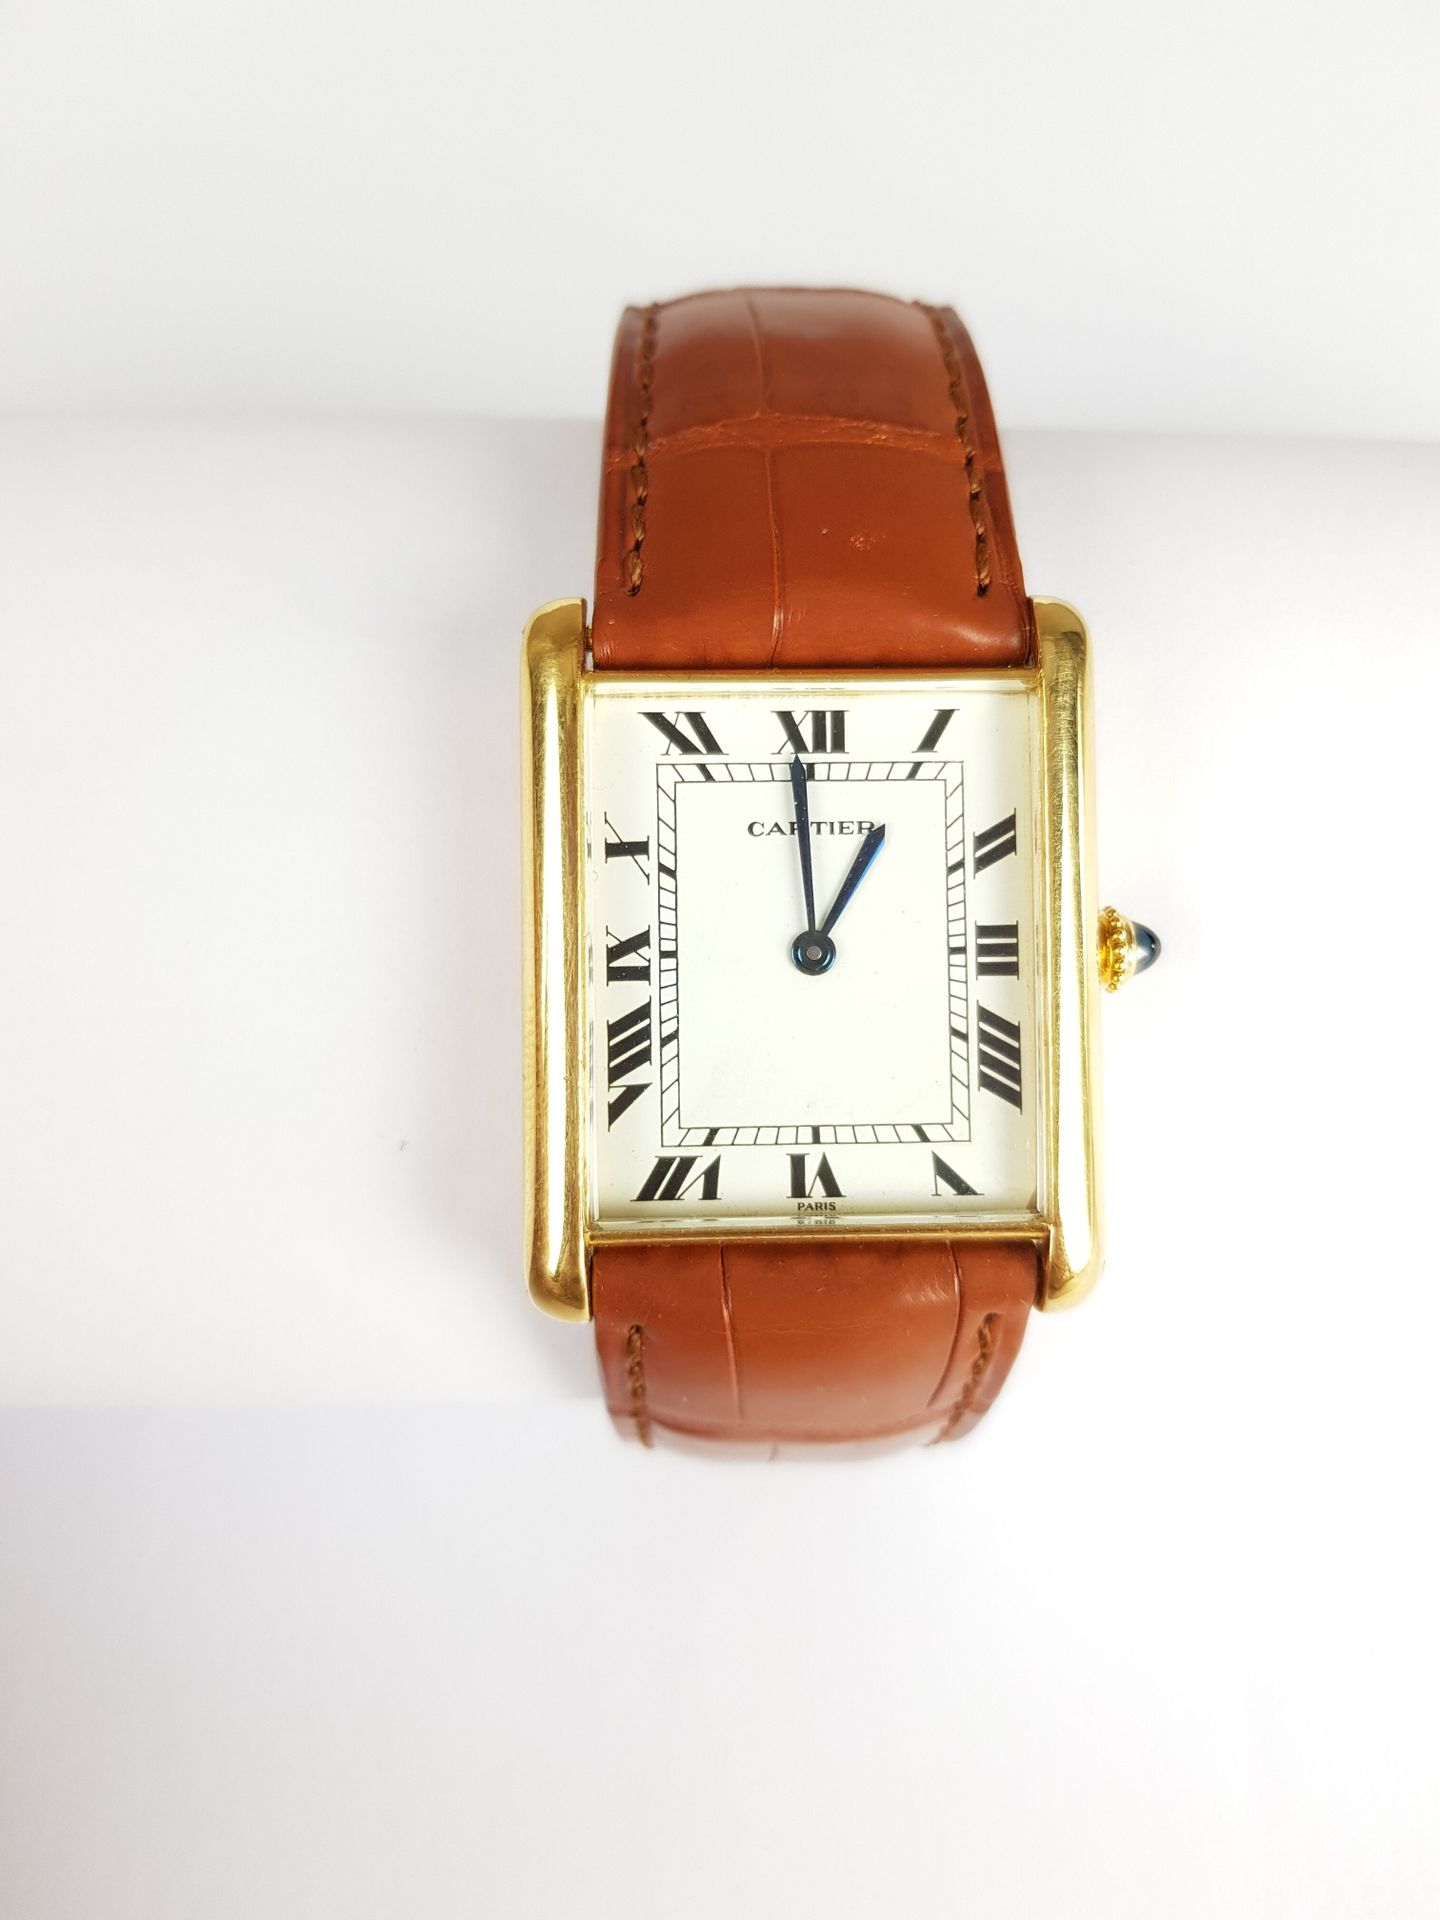 Null Precio inicial: 2.000 euros

CARTIER

Tanque

Reloj de oro amarillo de 750 &hellip;